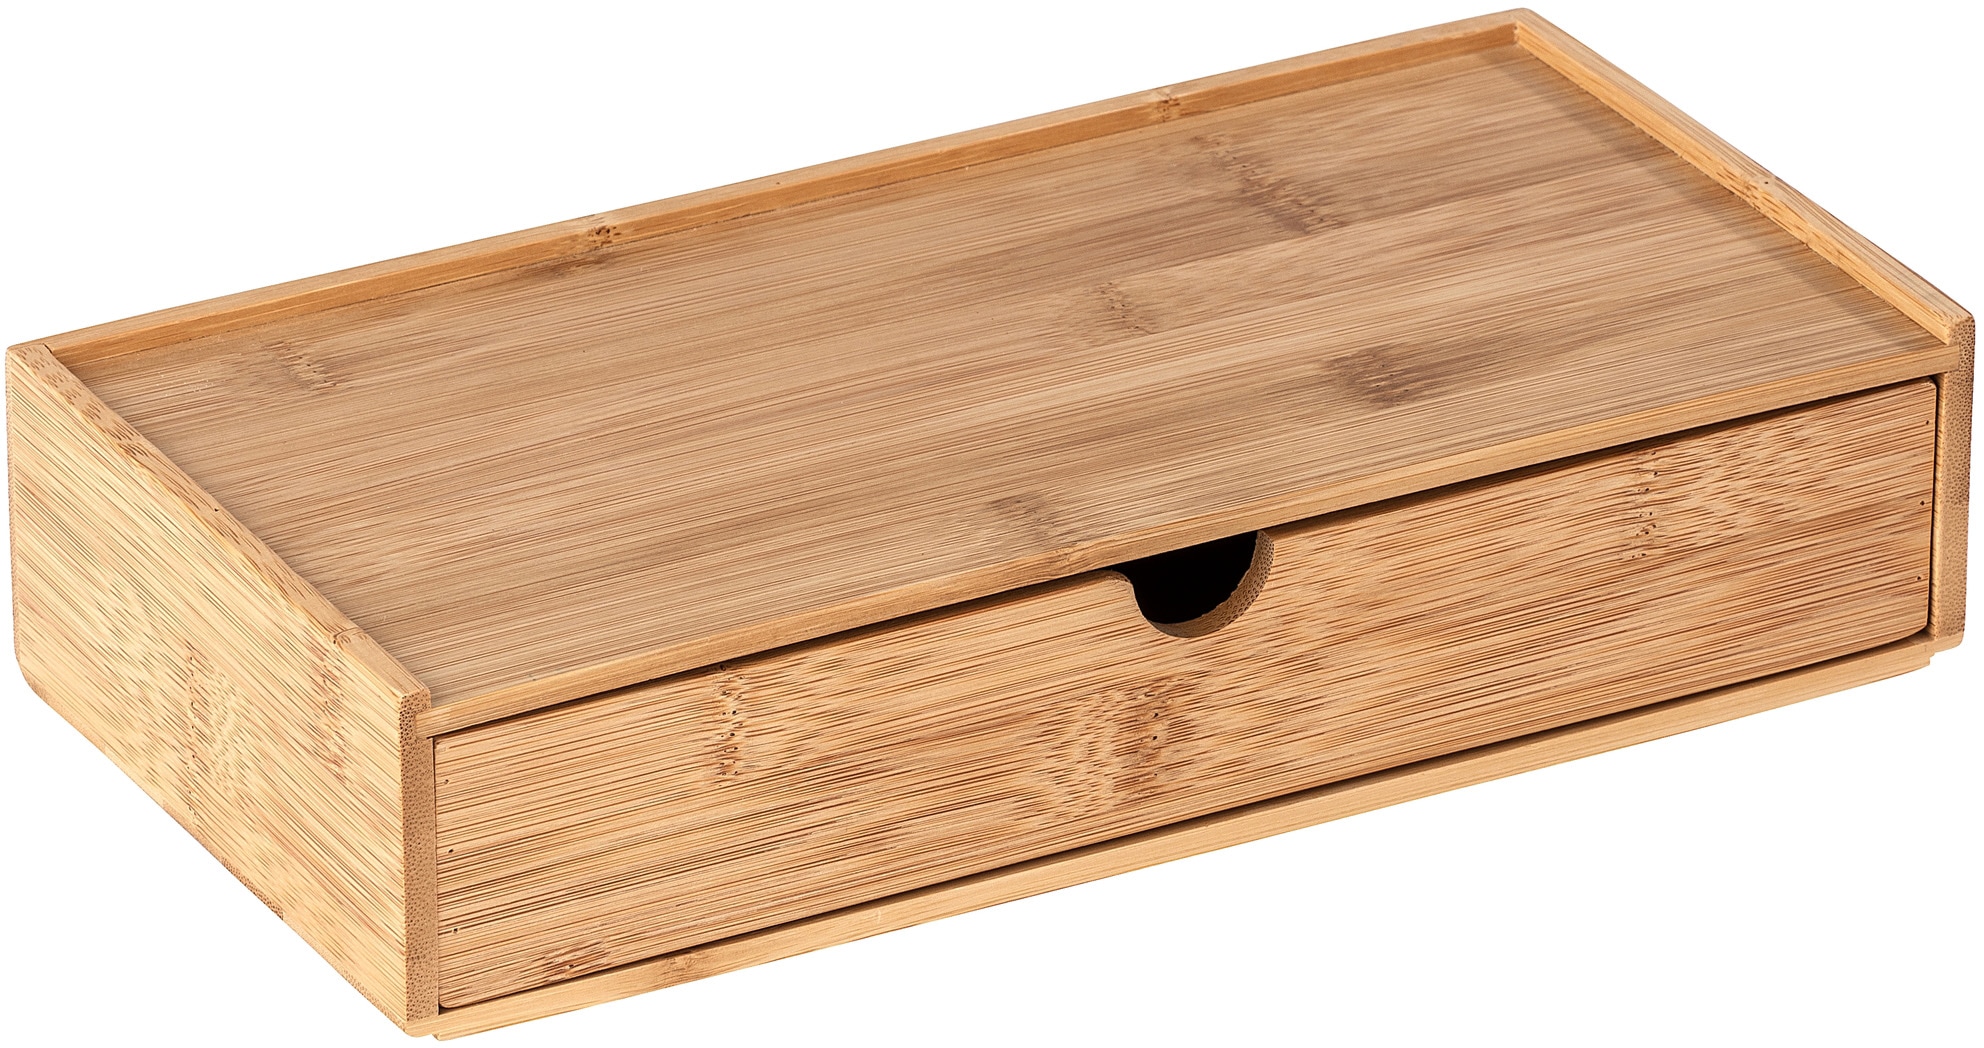 Organizer »Terra«, Aufbewahrungsbox, mit Schublade, ideal für Bad, Gäste-WC, Küche, Flur